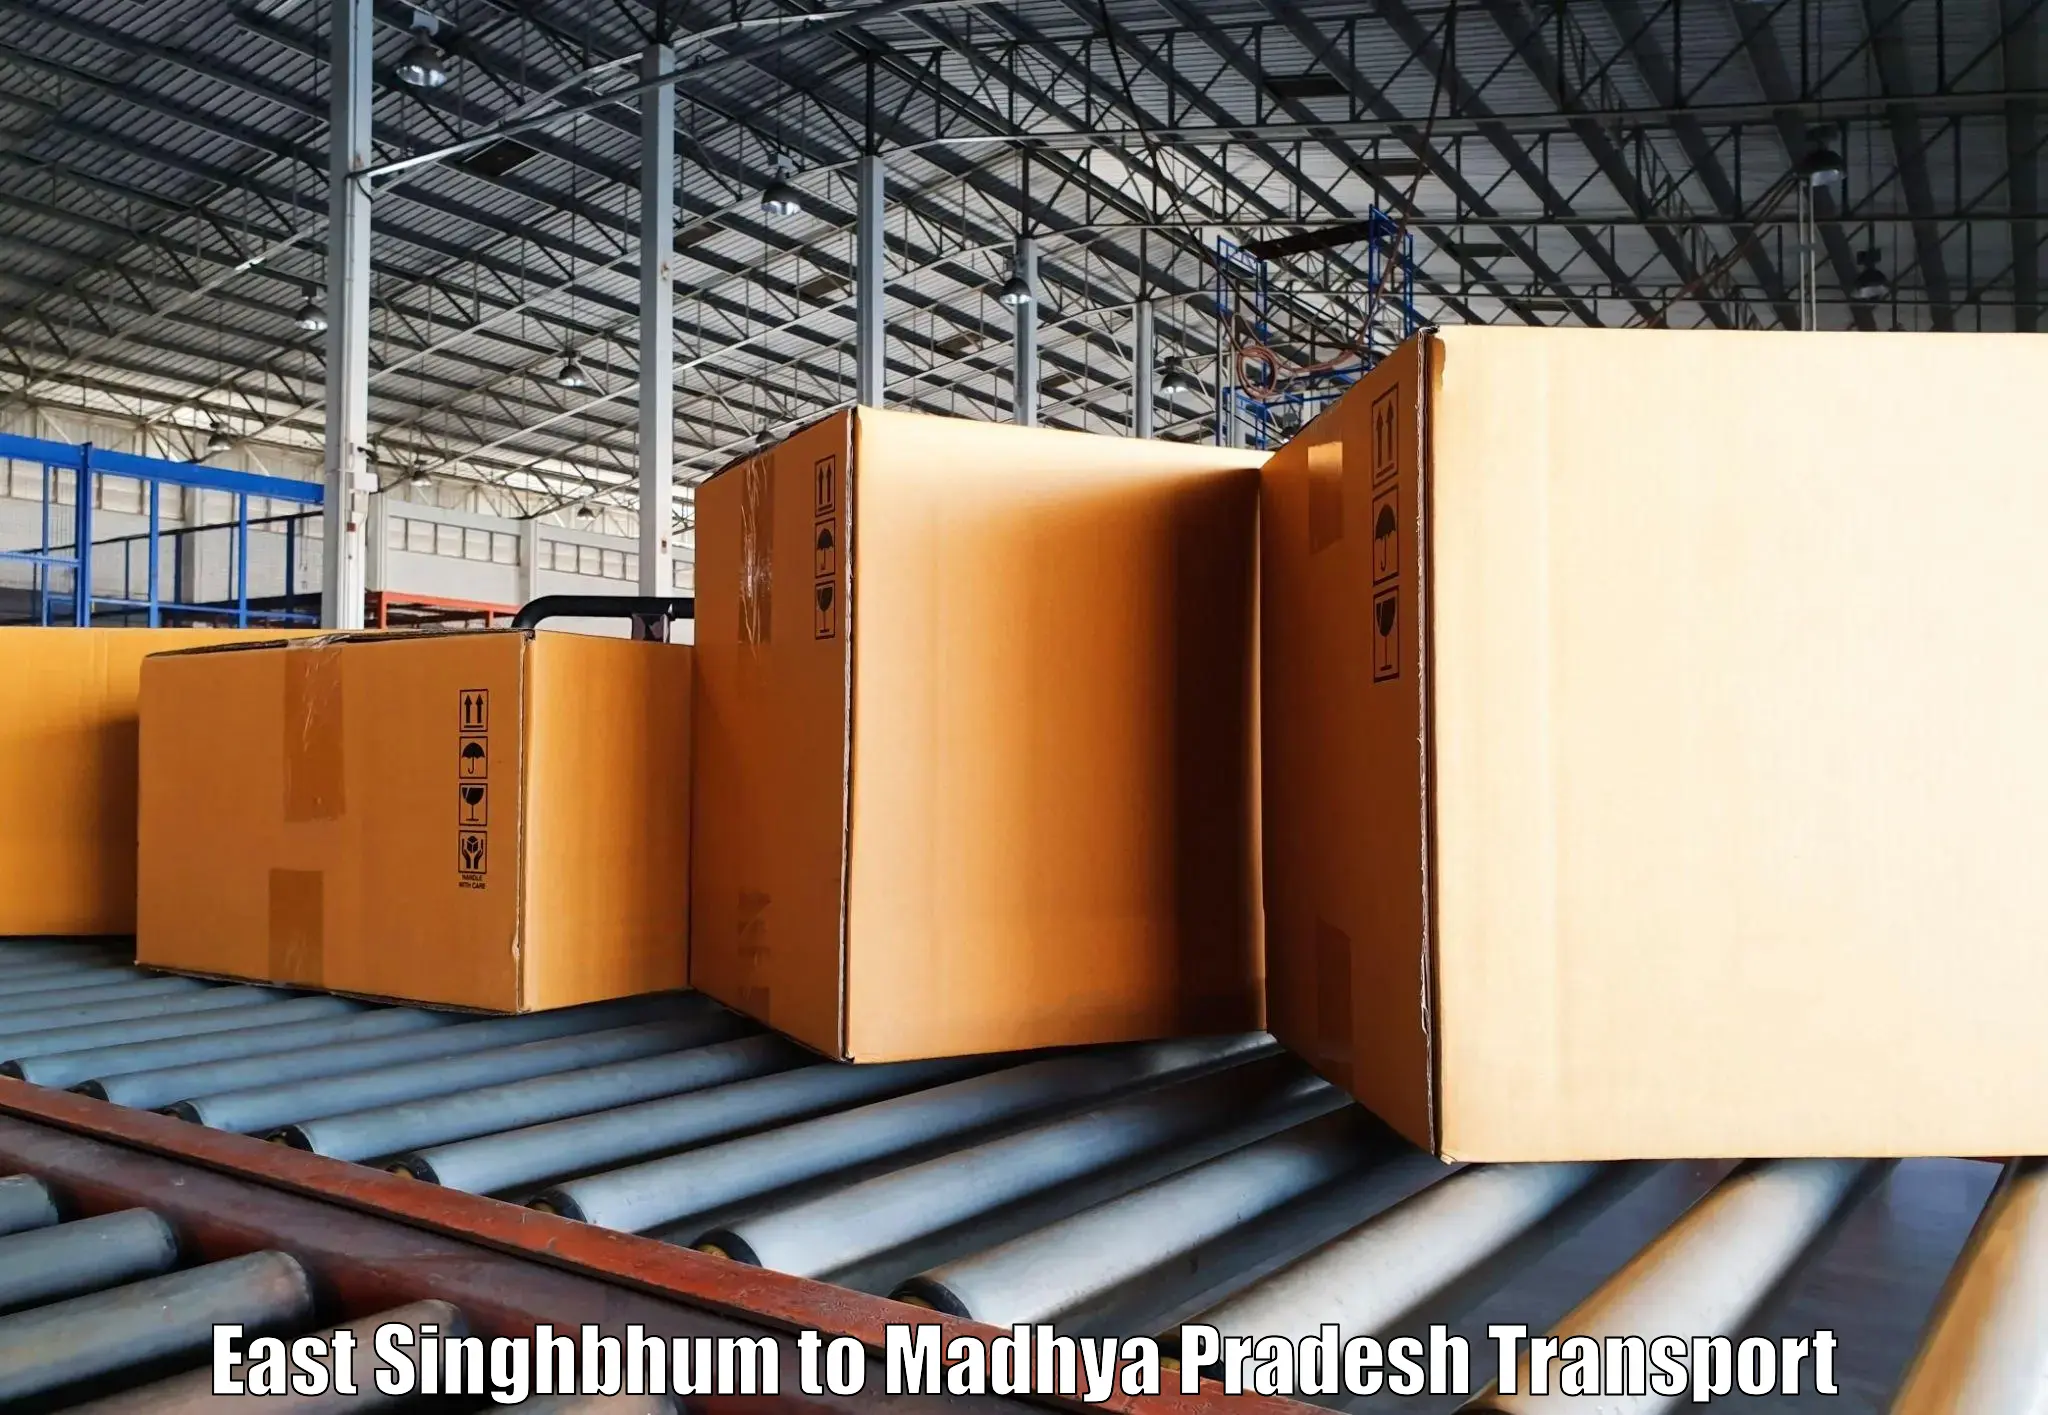 Shipping partner East Singhbhum to Gadarwara